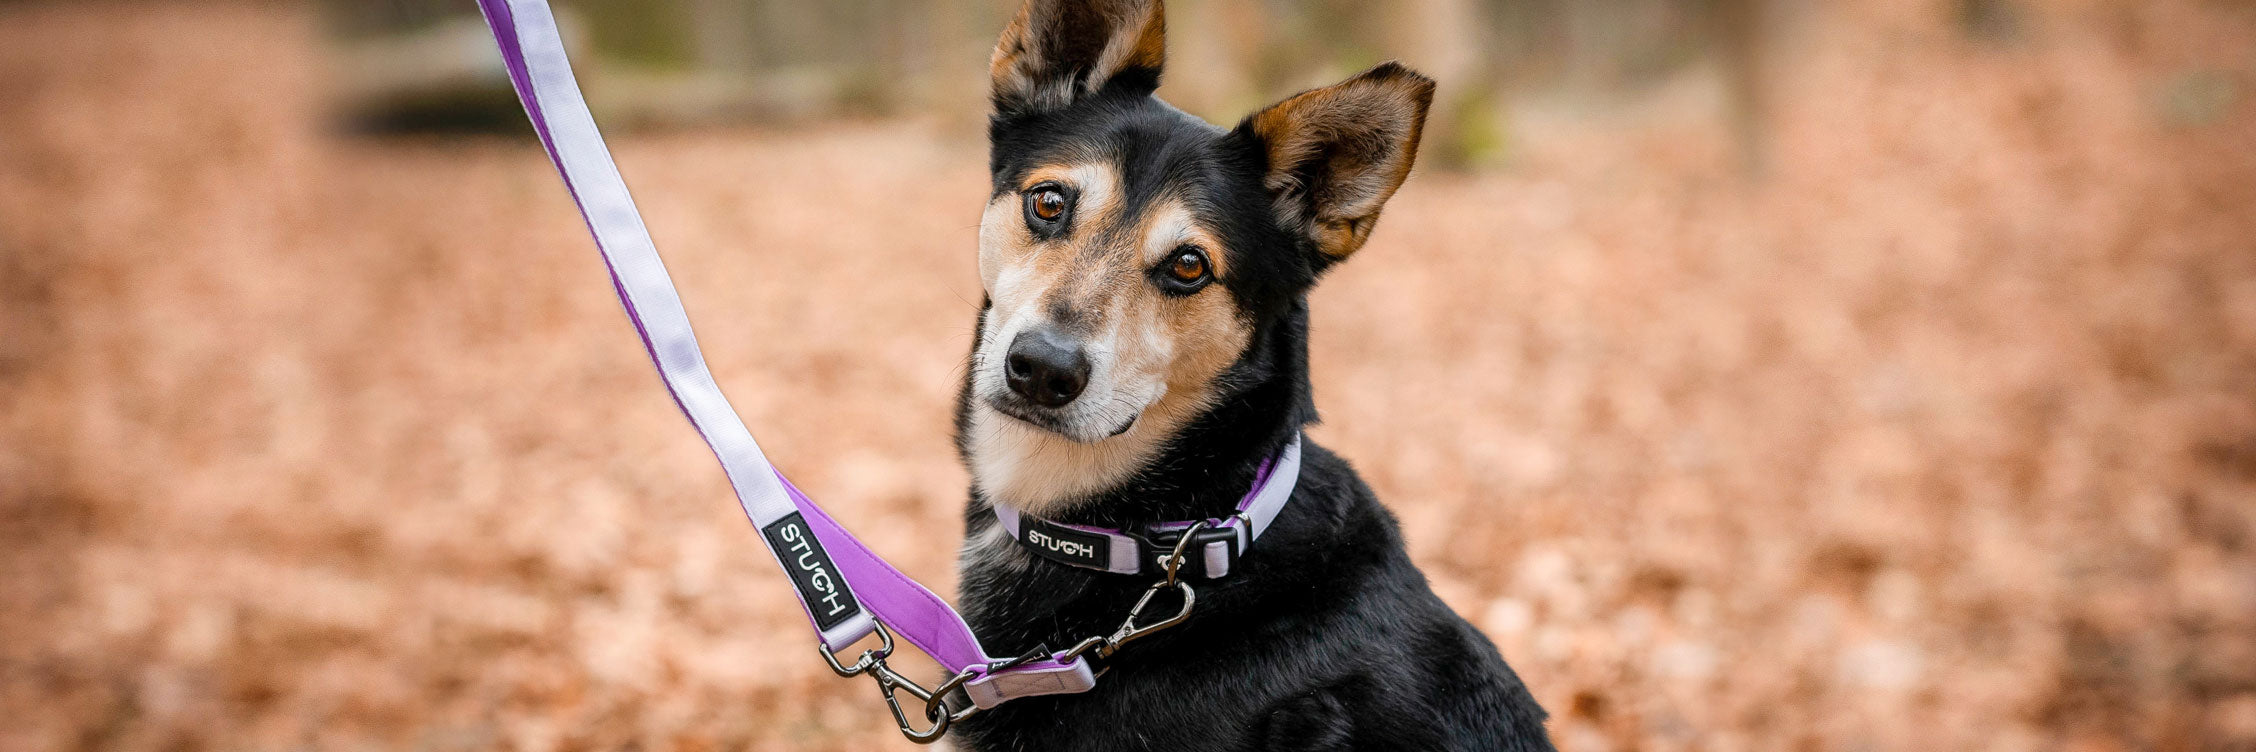 Ein süßer Hund im Waldlaub mit einem gepolstertem Hundehalsband und einer gepolsterten Hundeleine in der Farbe Flieder, Lila.